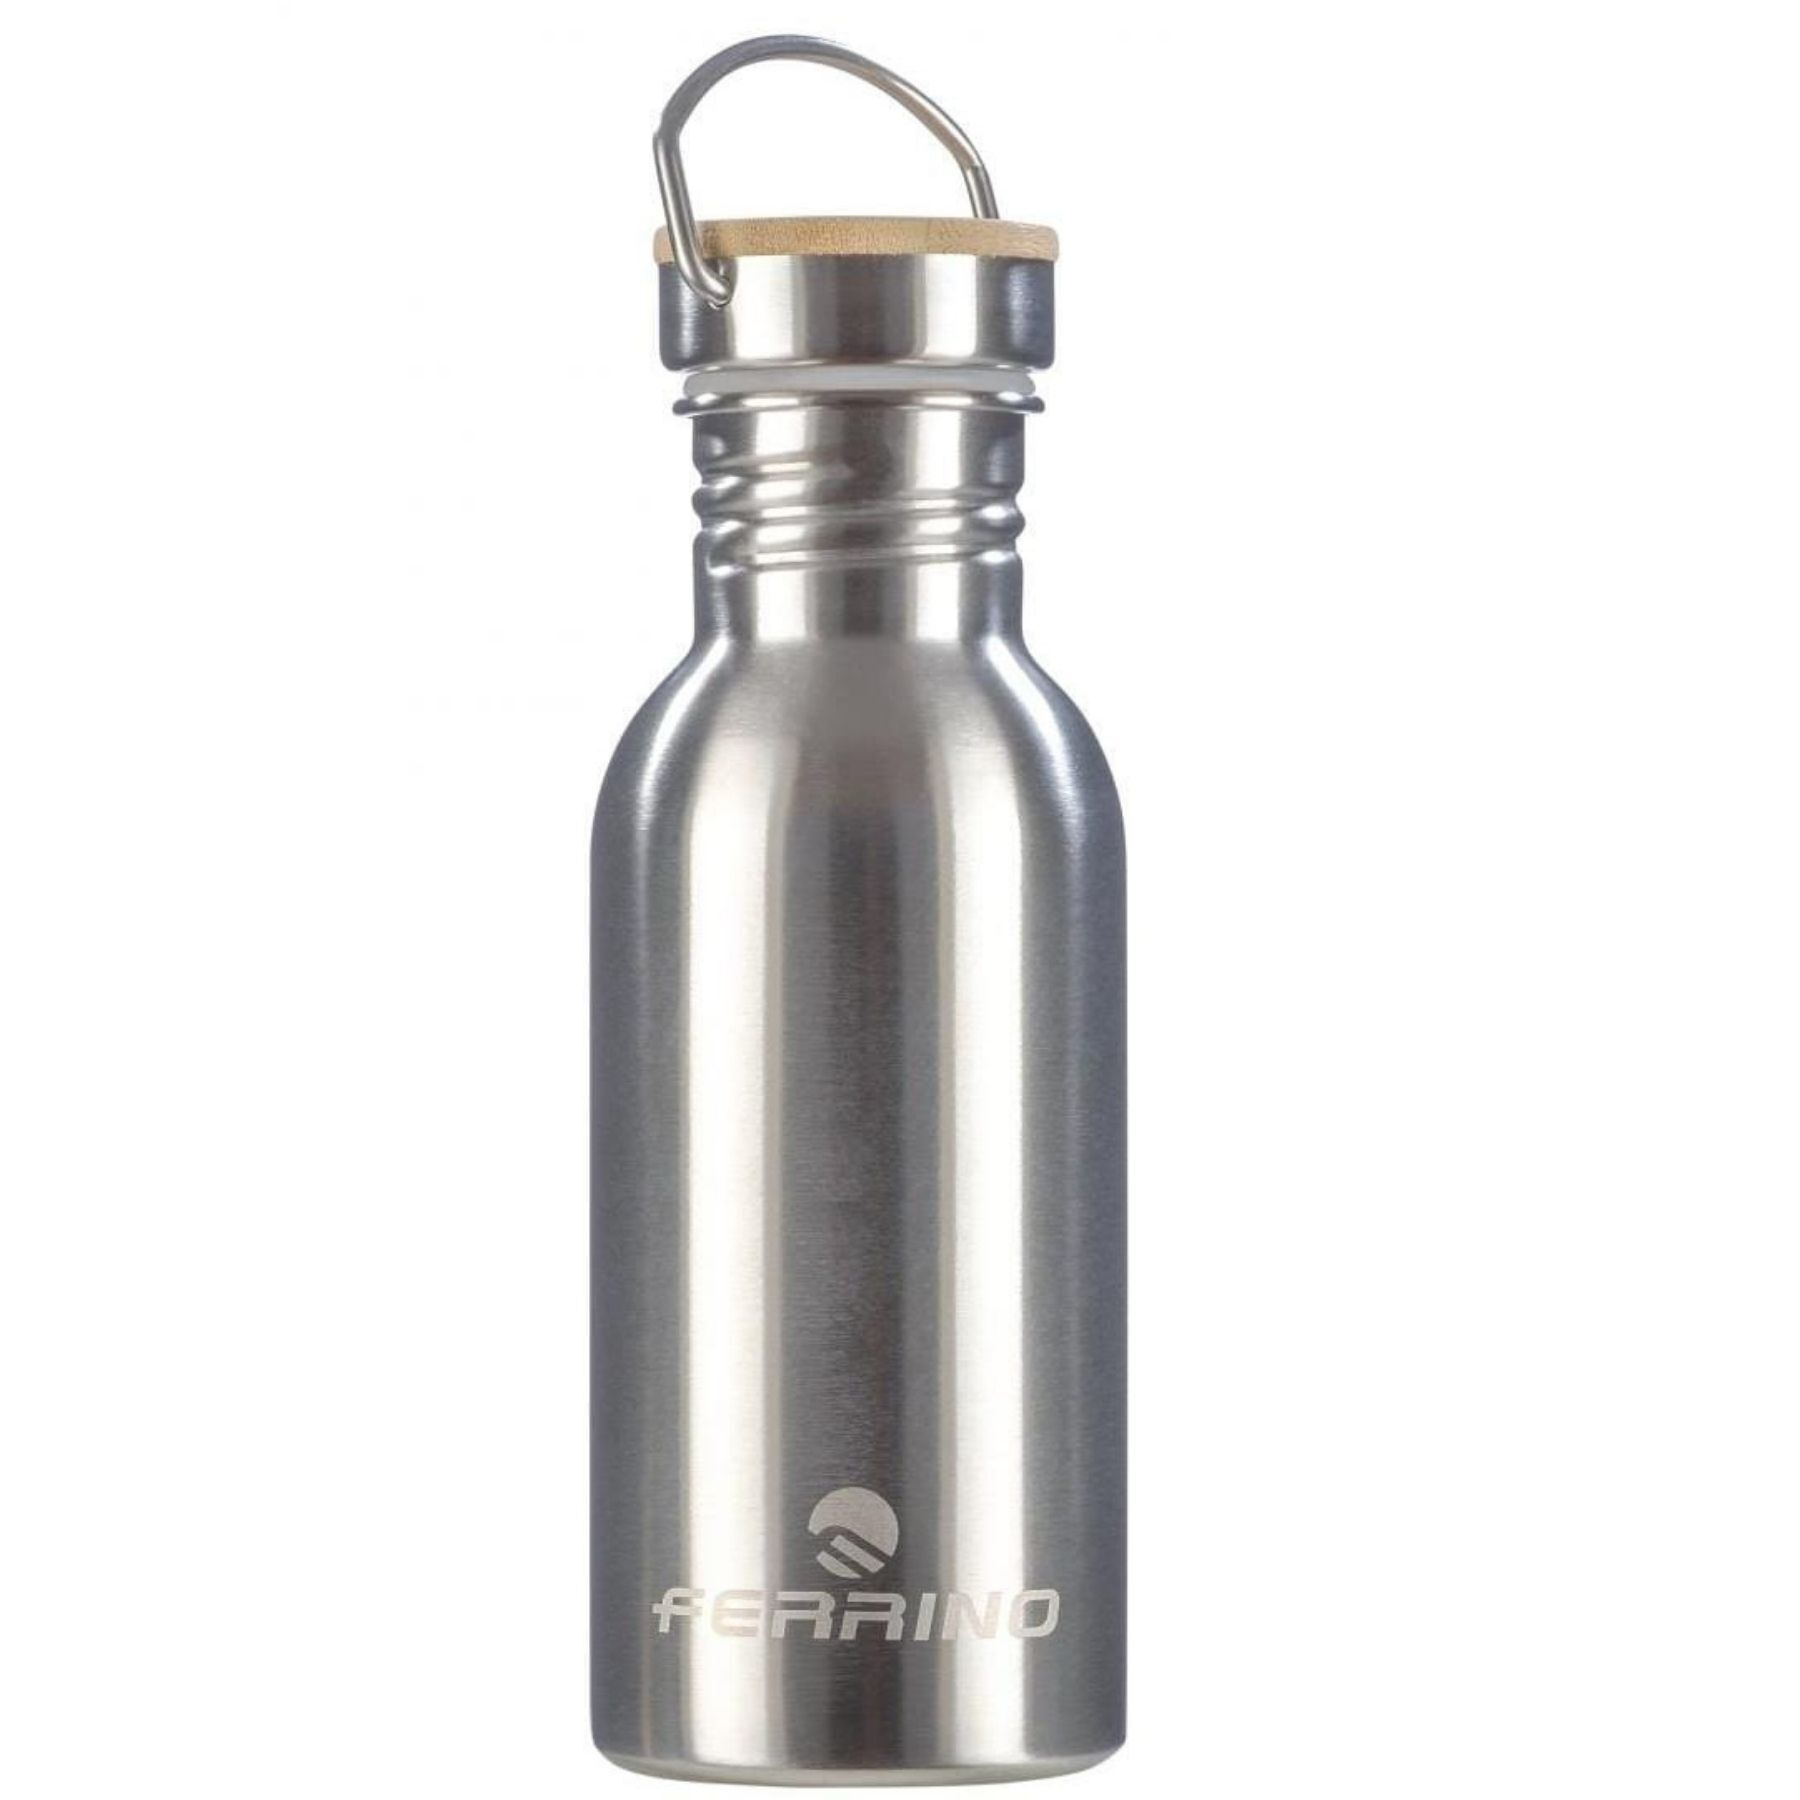 Ferrino Gliz - Water bottle